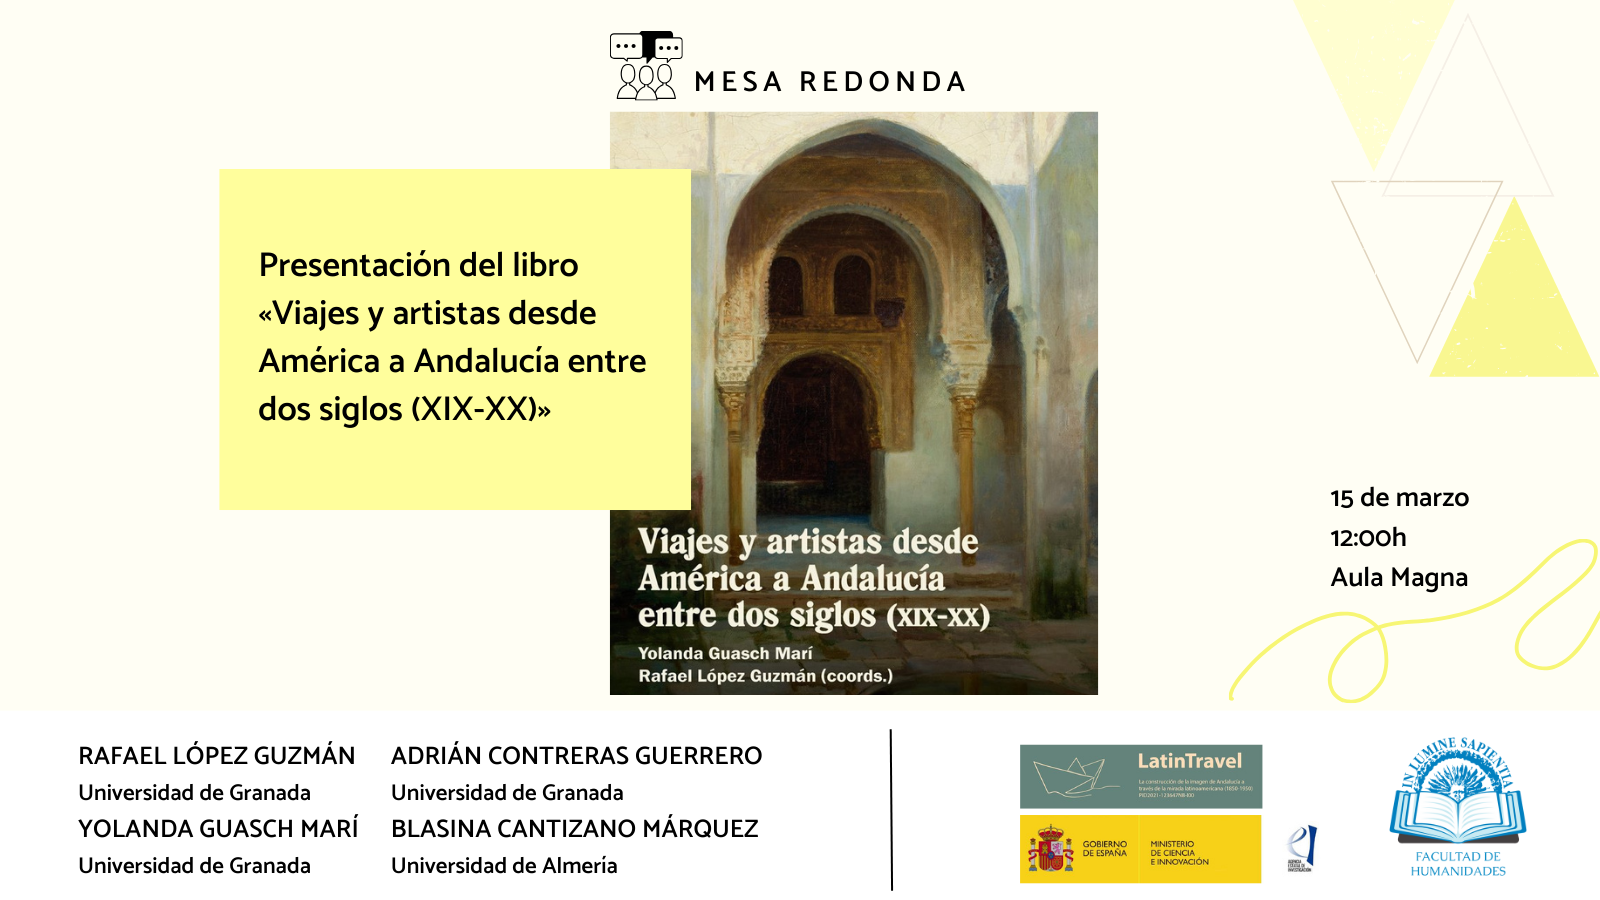 La Facultad de Humanidades y Blasina Cantizano Márquez organizan la presentación del libro «Viajes y artistas desde América a Andalucía entre dos siglos (XIX-XX)».